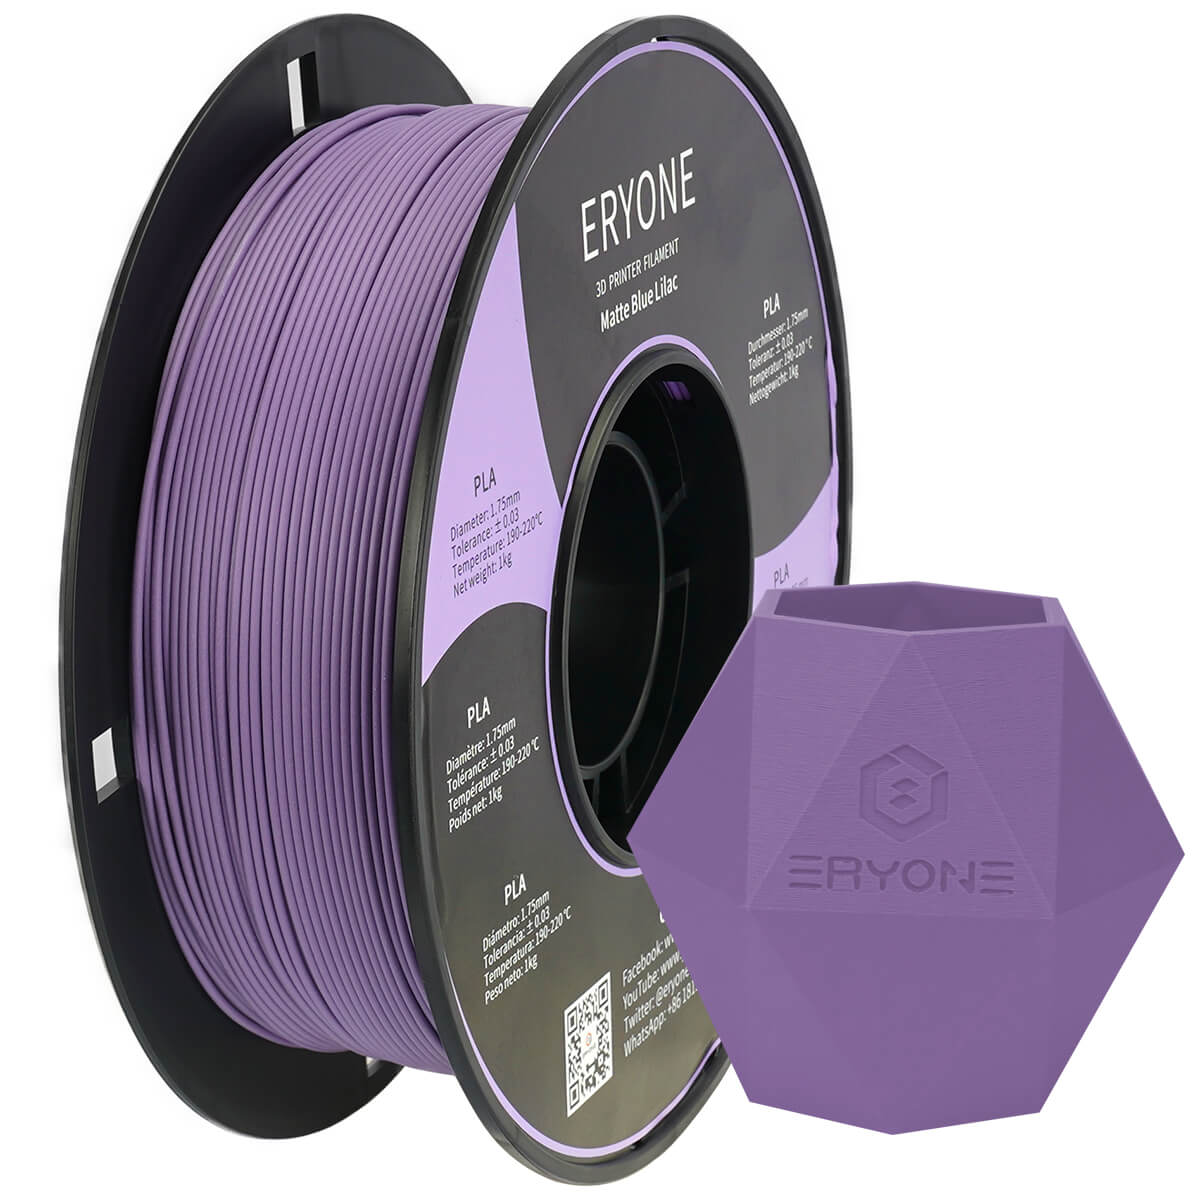 ERYONE Matte PLA Filament, 1.75mm Filament for 3D Printer, 1KG(2.2LBS)/ Spool, - eryone3d